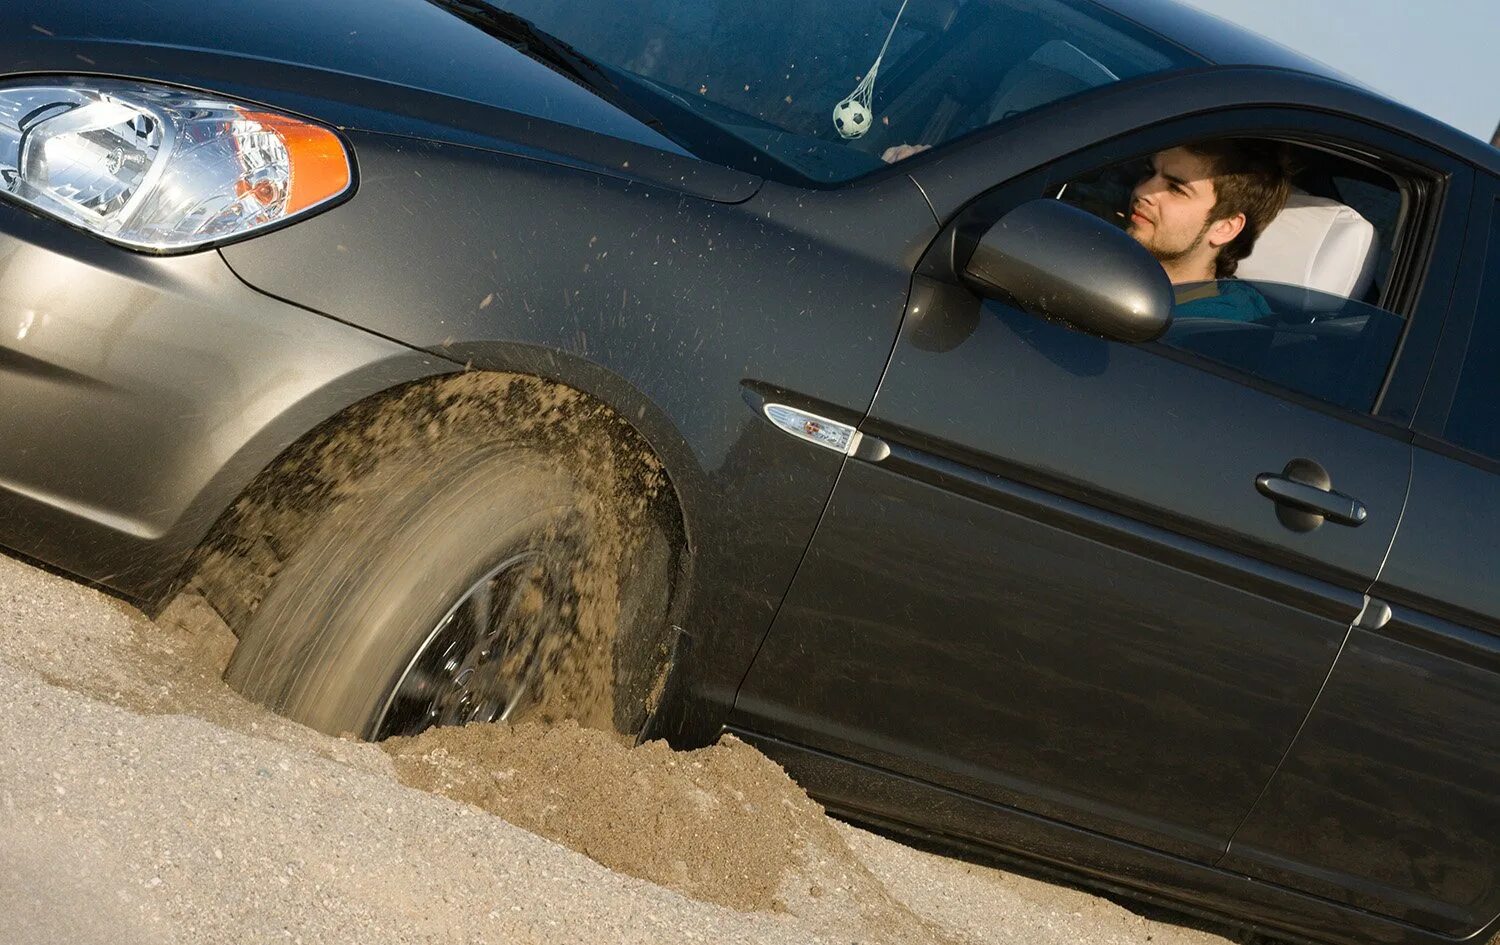 Машина буксует. Машина застряла в песке. Машина с песком. Автомобиль забуксовал. Автомобиль попал в воду